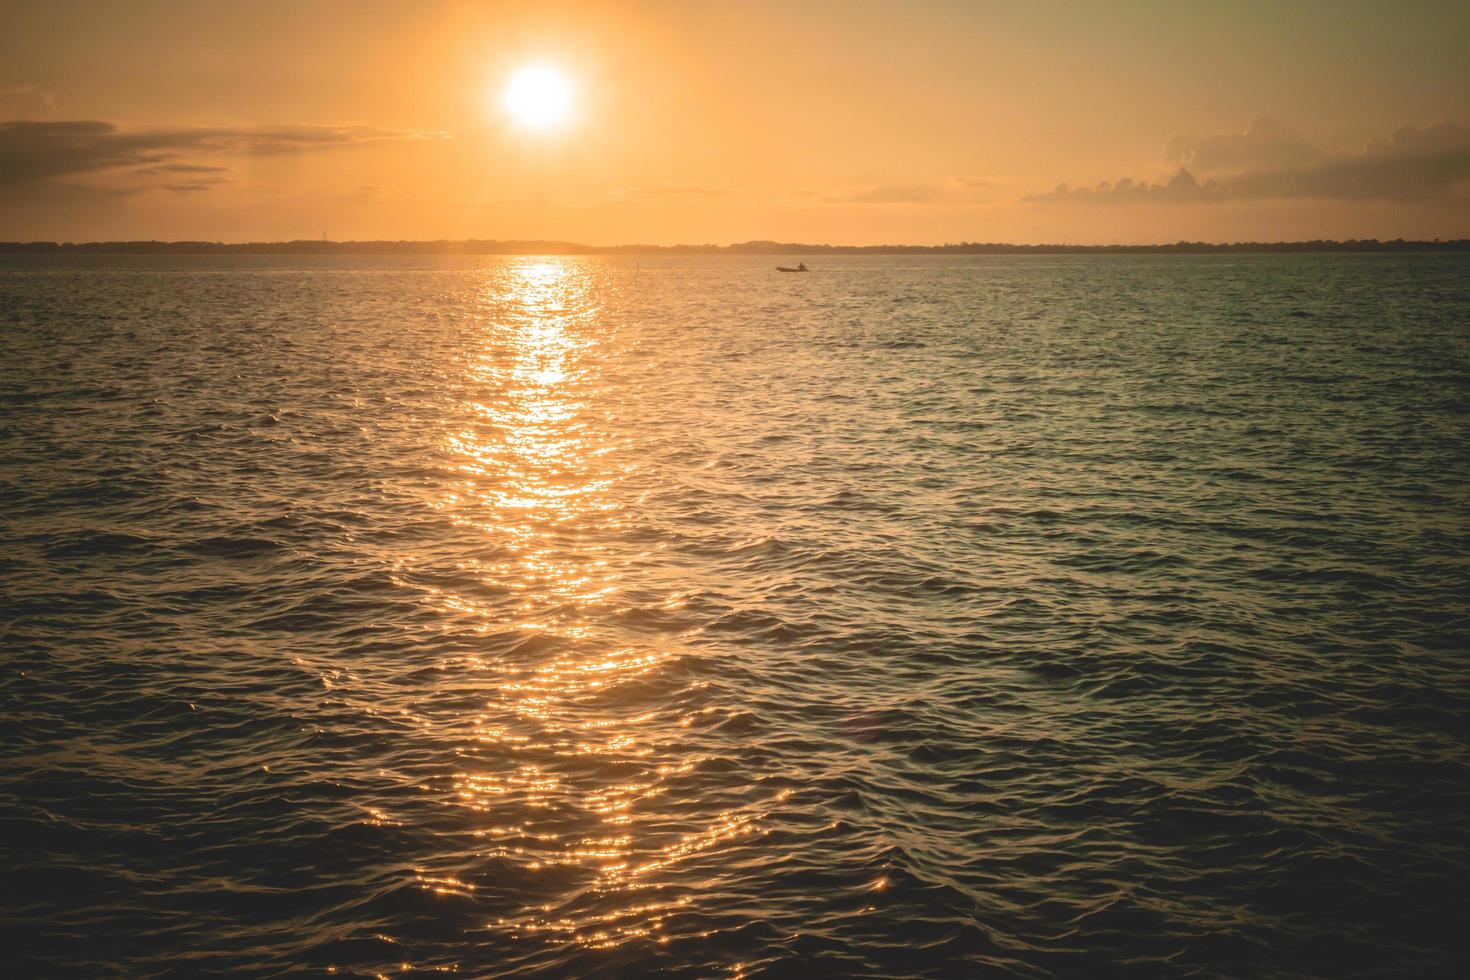 Schöner Hintergrundbild 1470x980. Sonnenuntergang Sonnenaufgang über Meer Ozean Sommer Landschaft Schöner Natur Hintergrund. 7161632 Stock Photo Bei Vecteezy